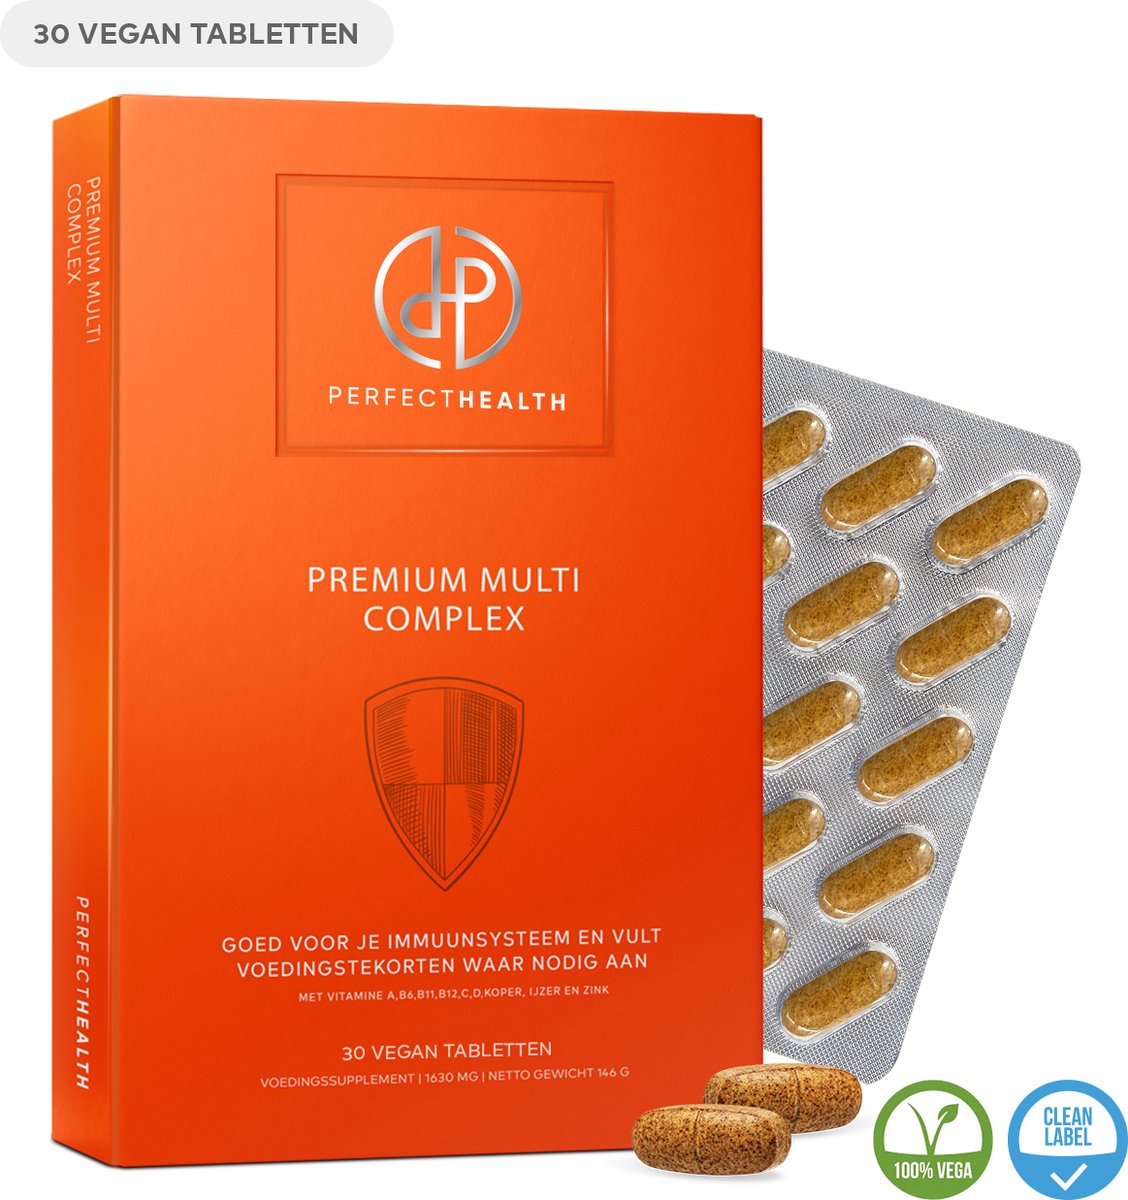 Perfect Health - Premium Multi Complex - Multivitaminen en Mineralen - Immuunsysteem en energiehuishouding - 30 tabletten - Hoog gedoseerd - Vegan